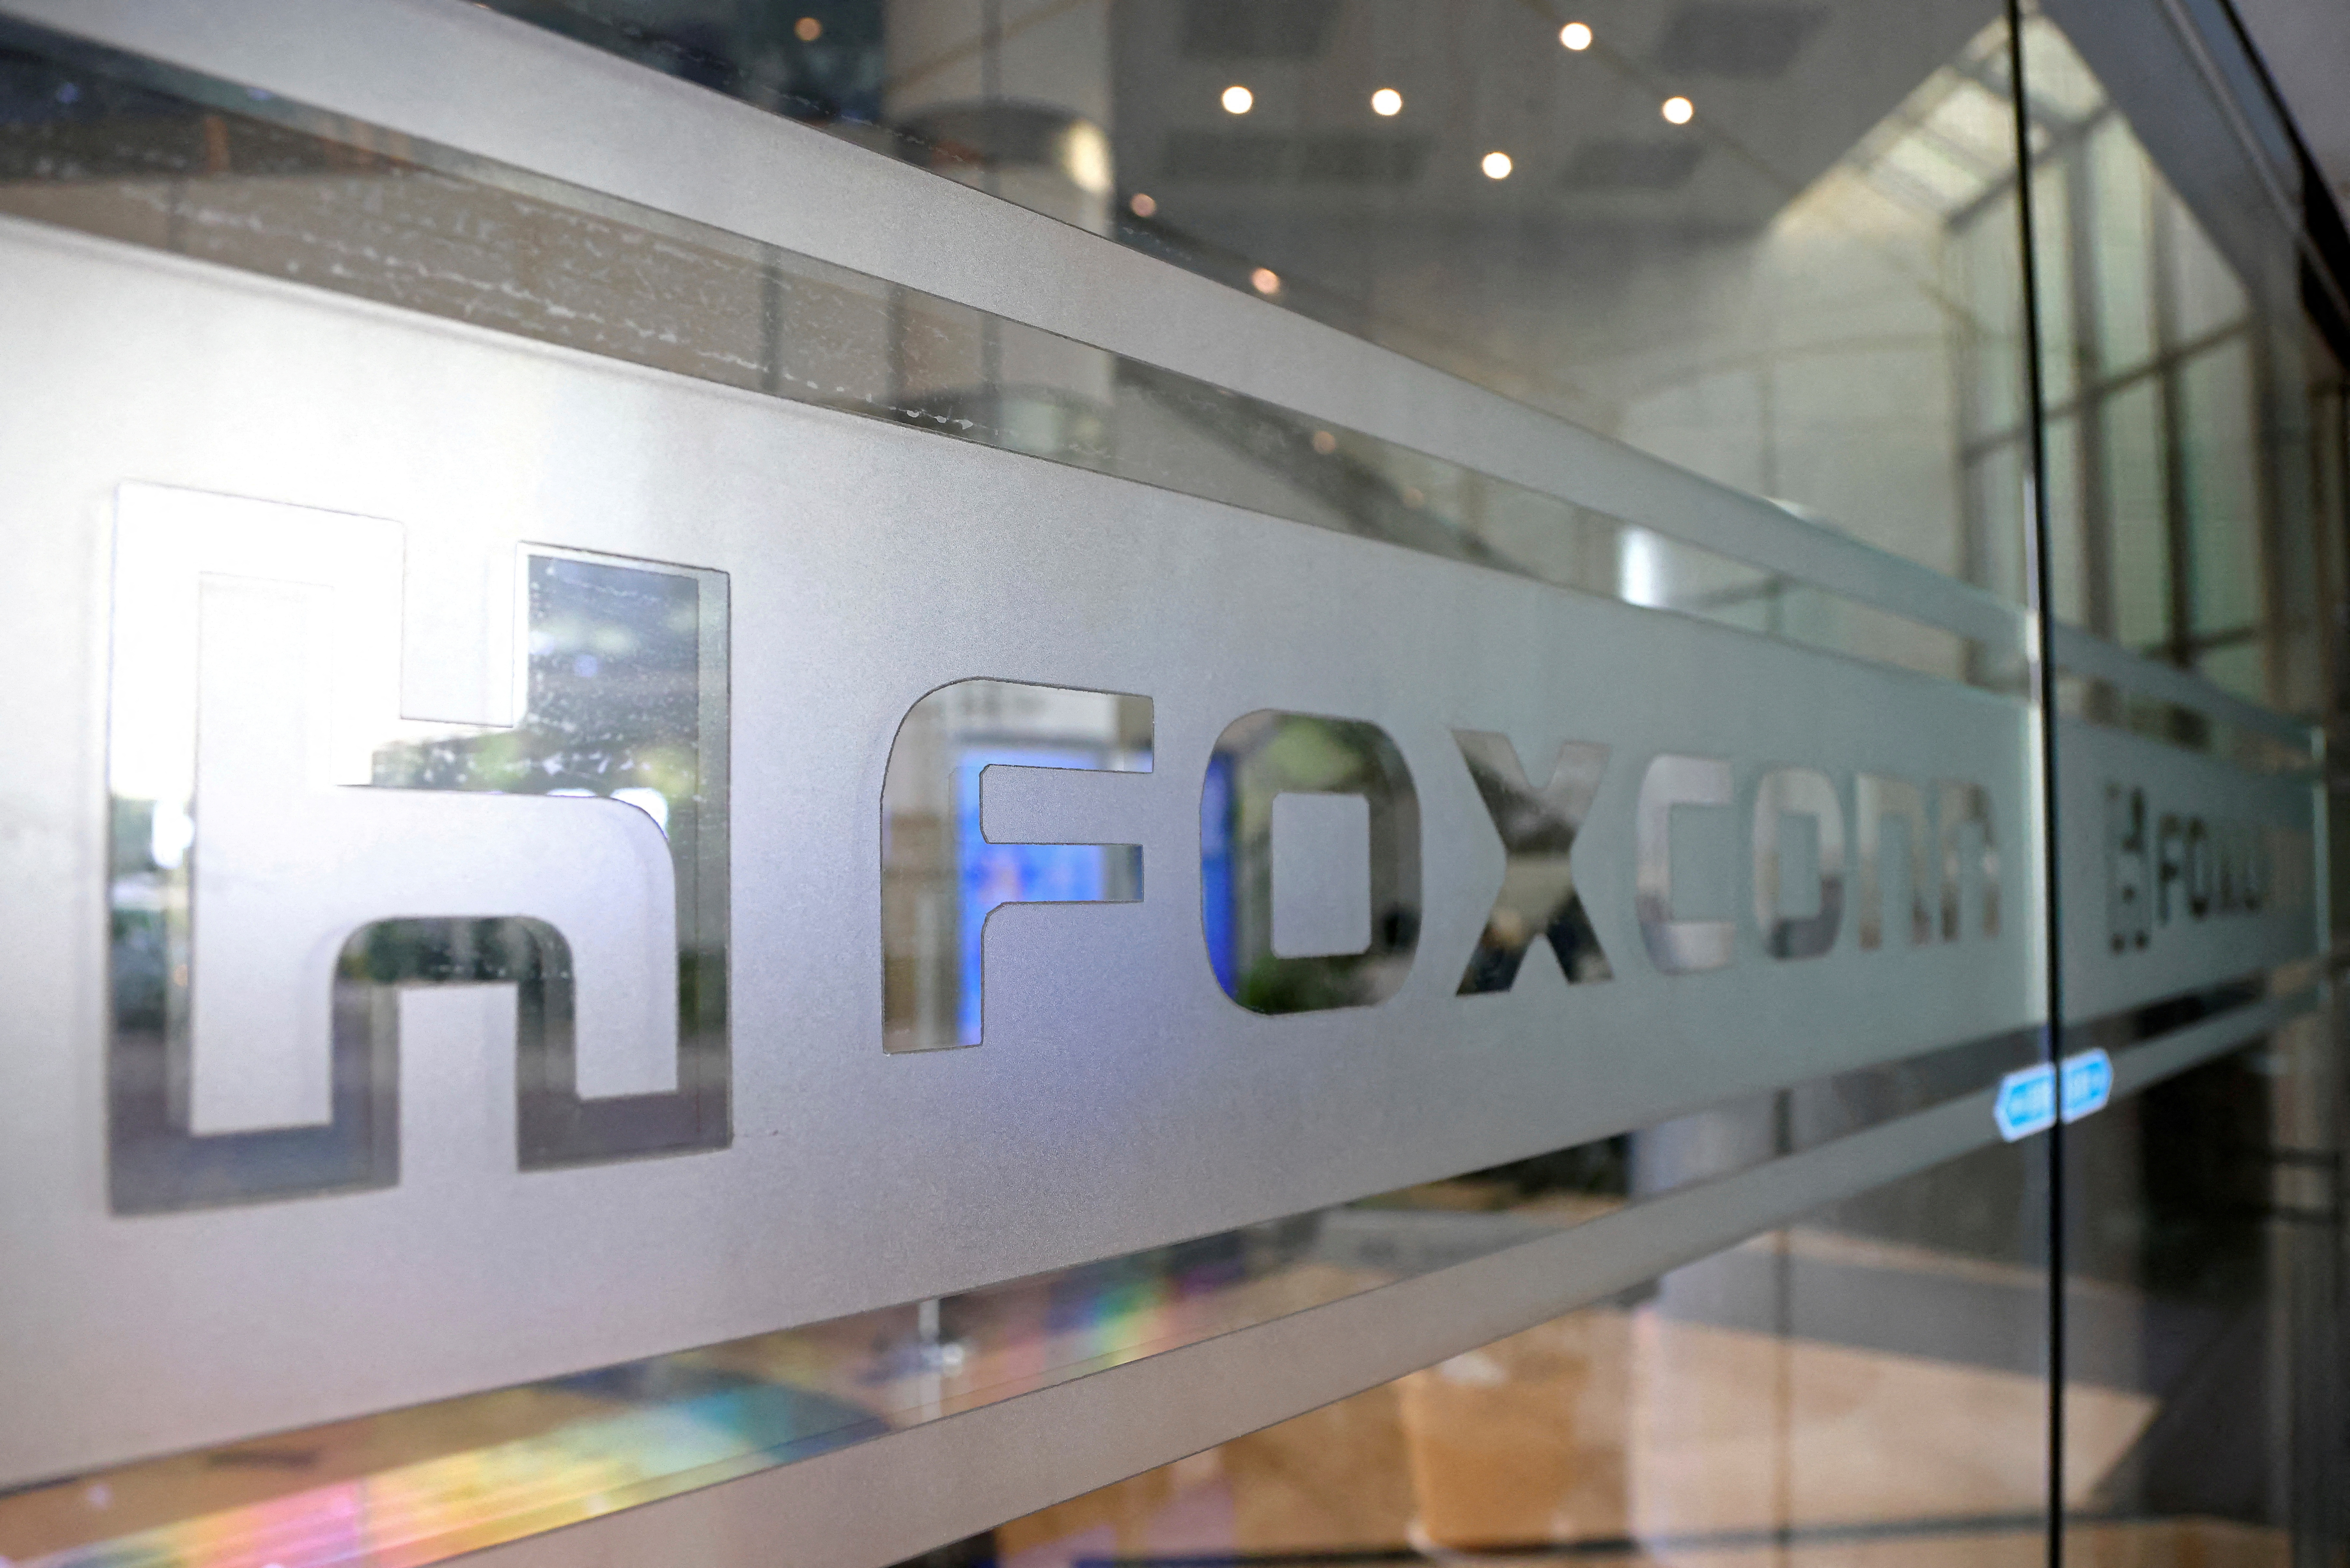 Le logo Foxconn est visible sur une porte vitrée de son immeuble de bureaux à Taipei,